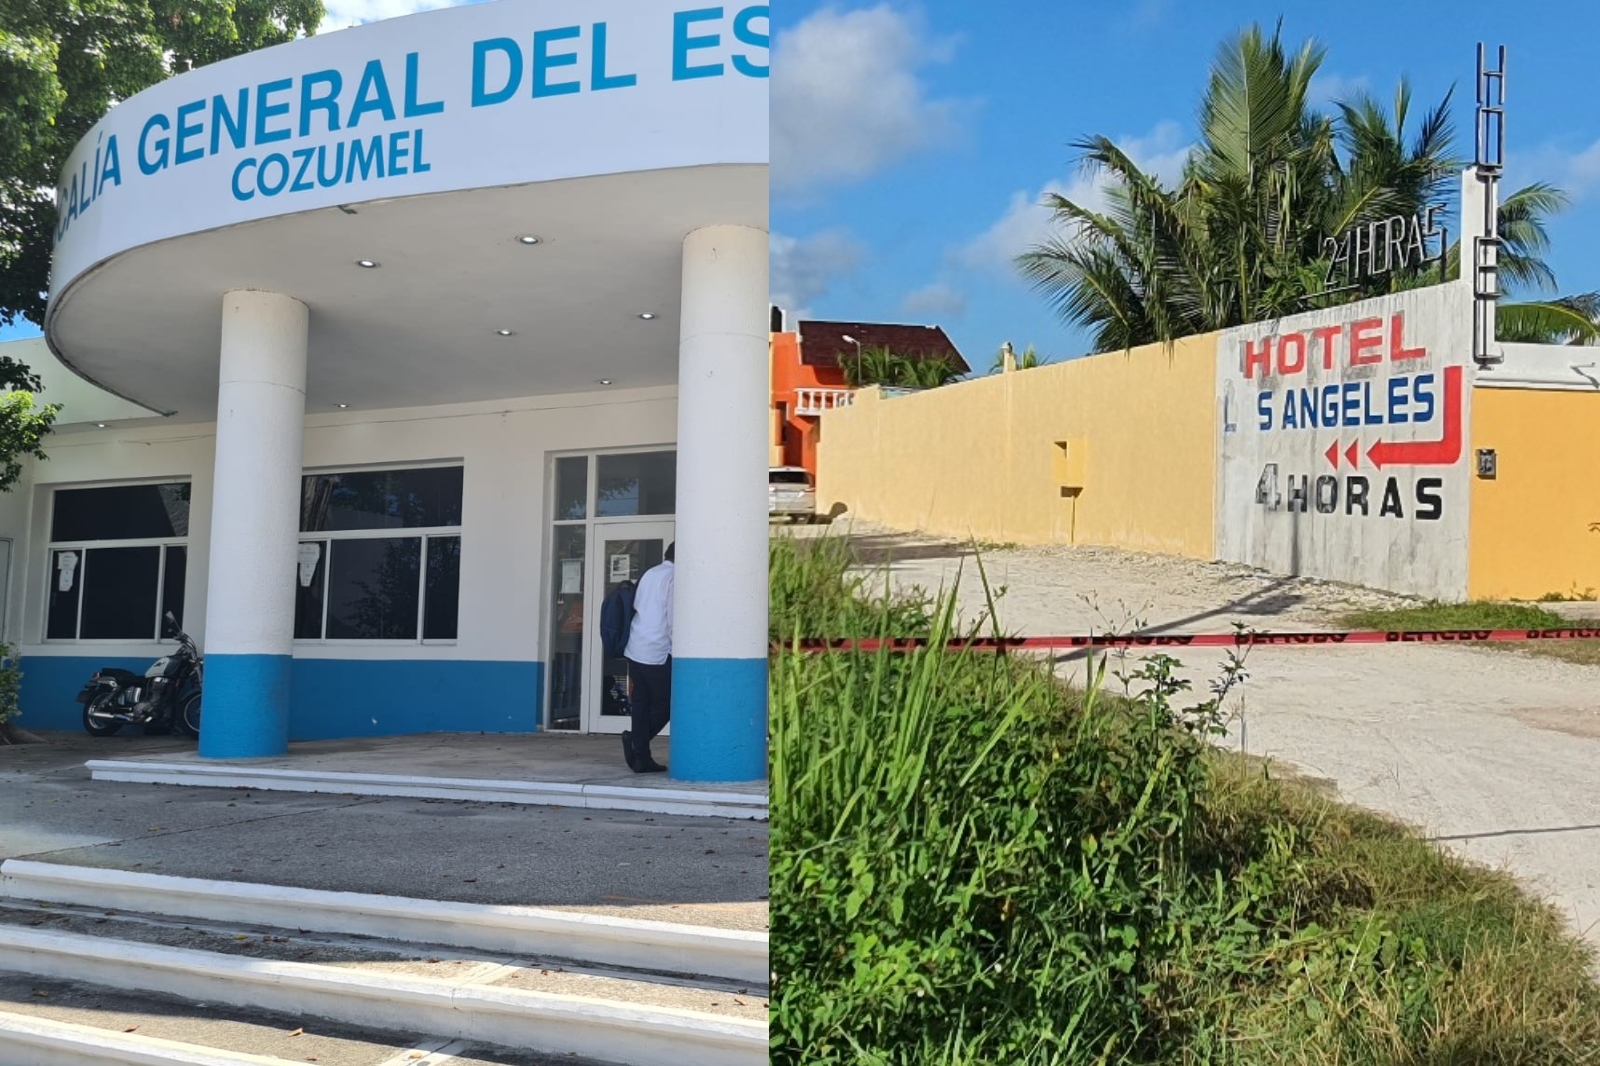 El feminicidio de Paola ocurrió en agosto del 2021 en un hotel de la carretera transversal de Cozumel, donde su presunto asesino fue detenido